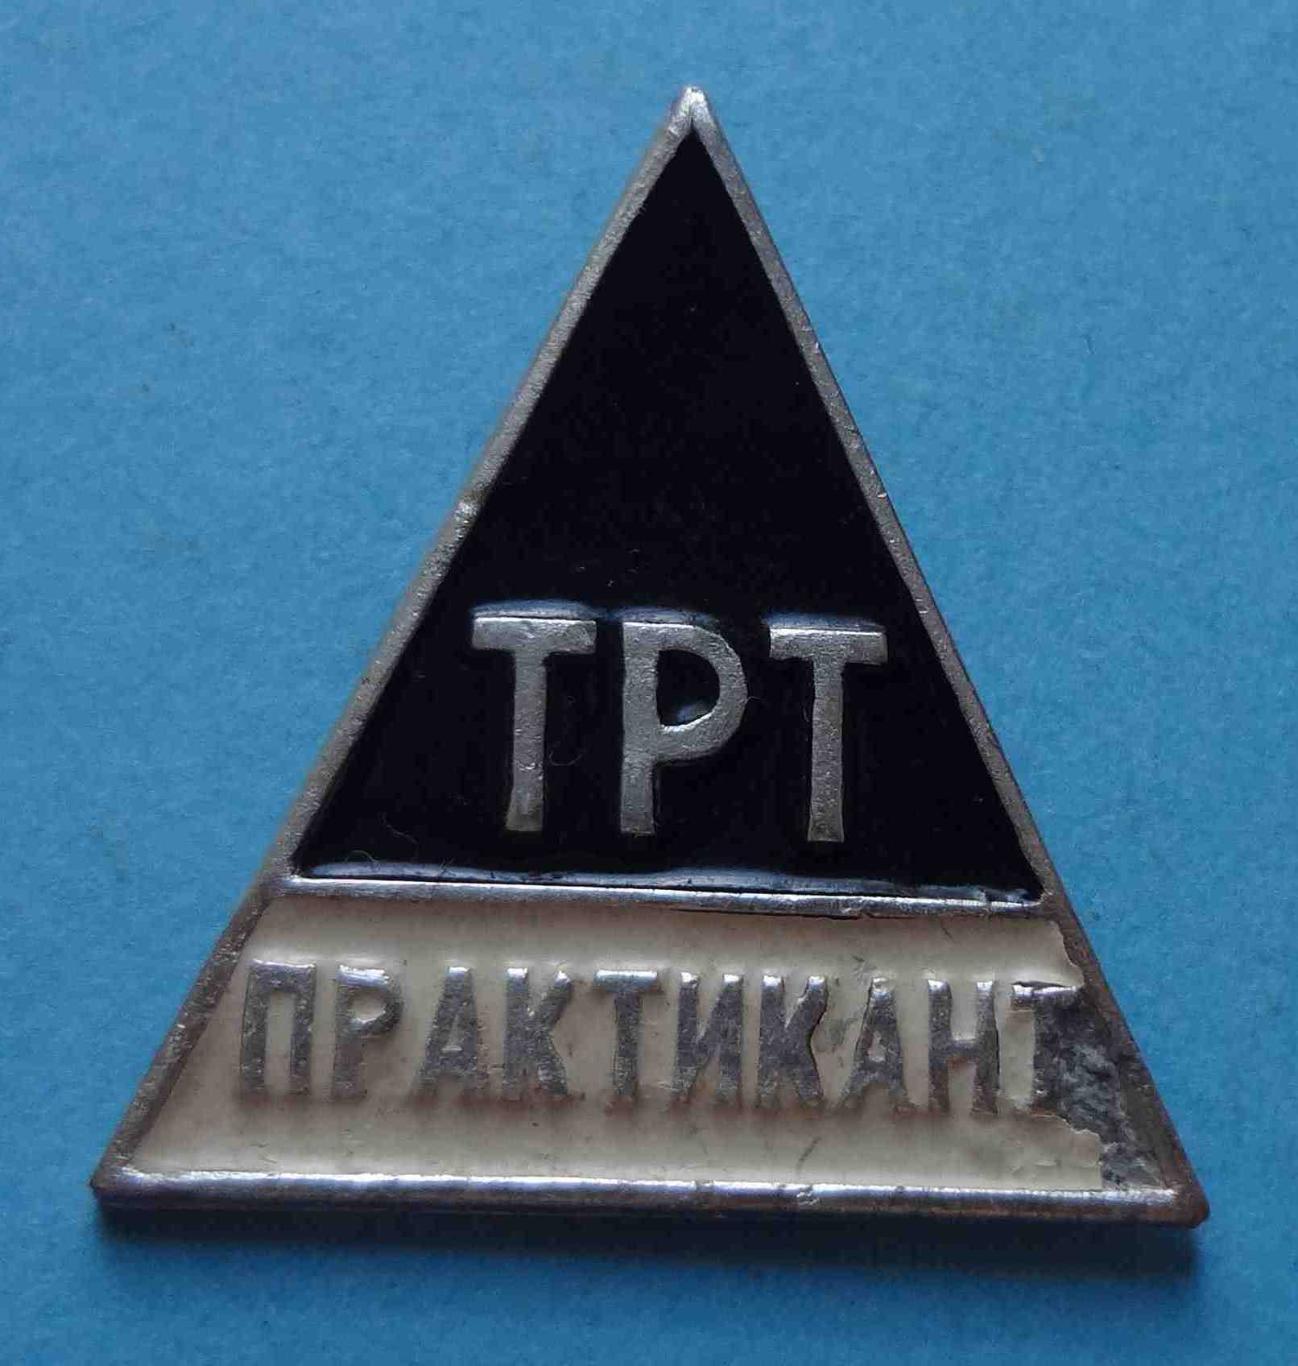 ТРТ Практикант Техникум советской торговли УССР 2 (13)